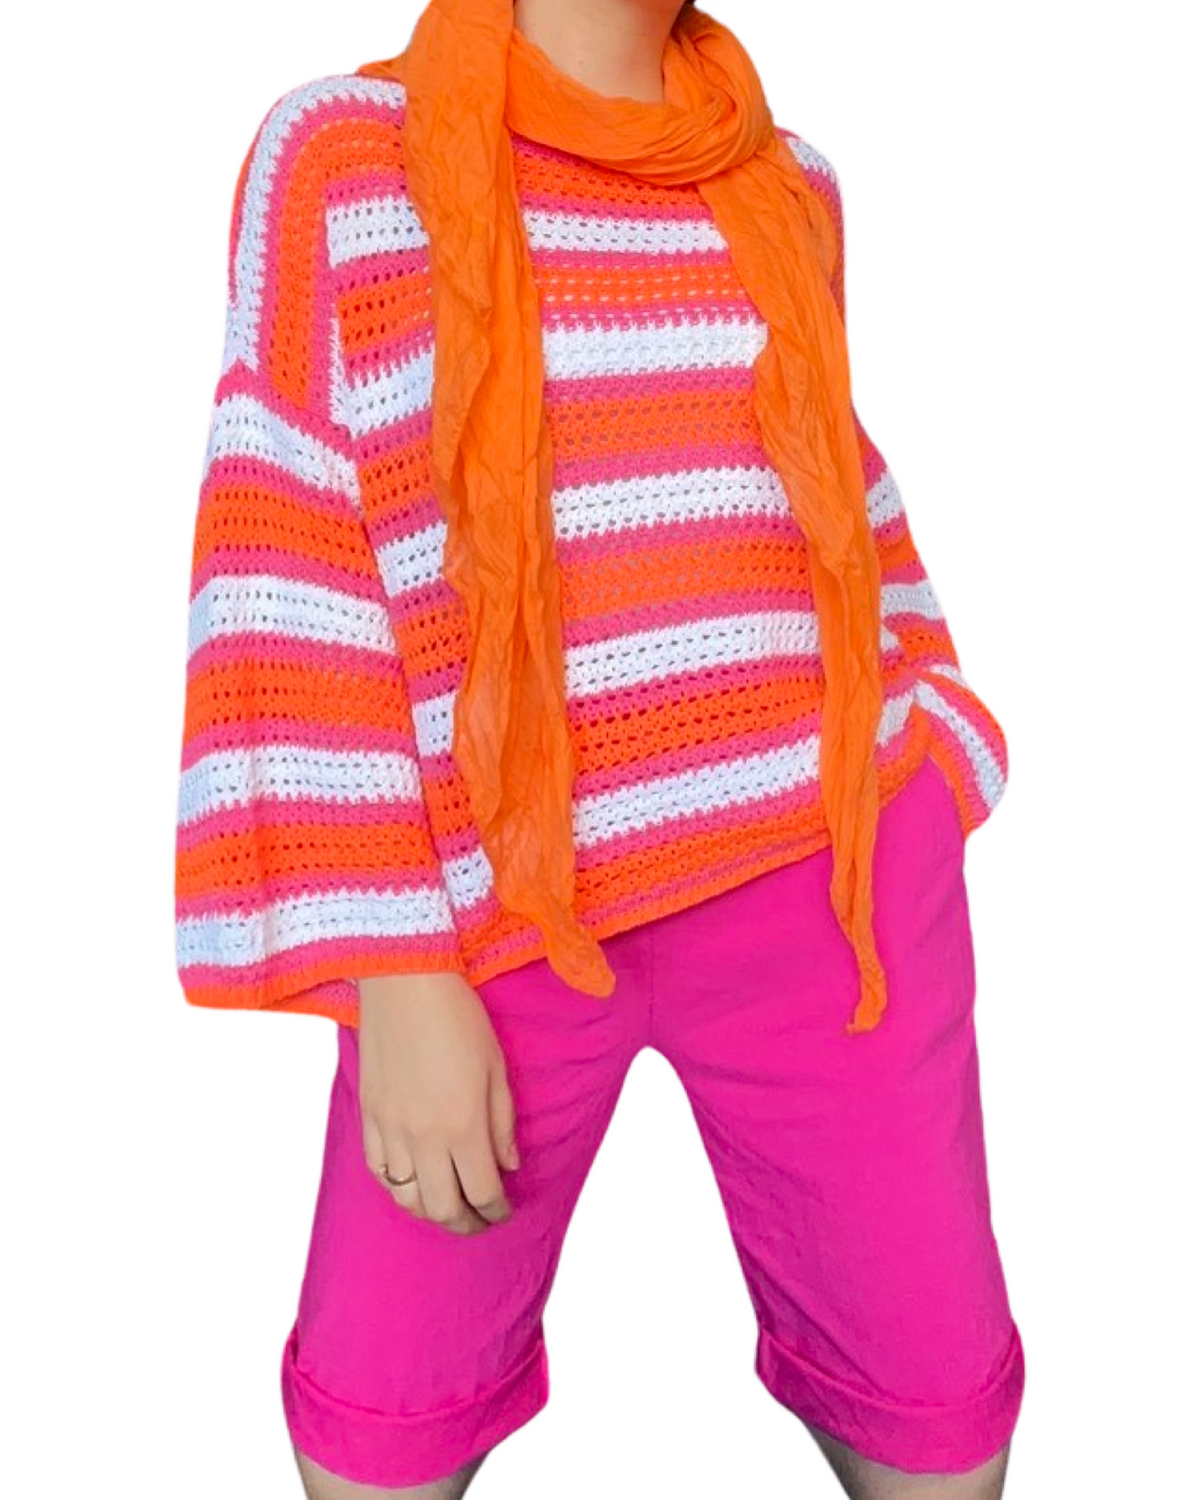 Bermuda fuchsia pour femme à taille élastique avec cordon avec chandail en tricot et foulard orange.